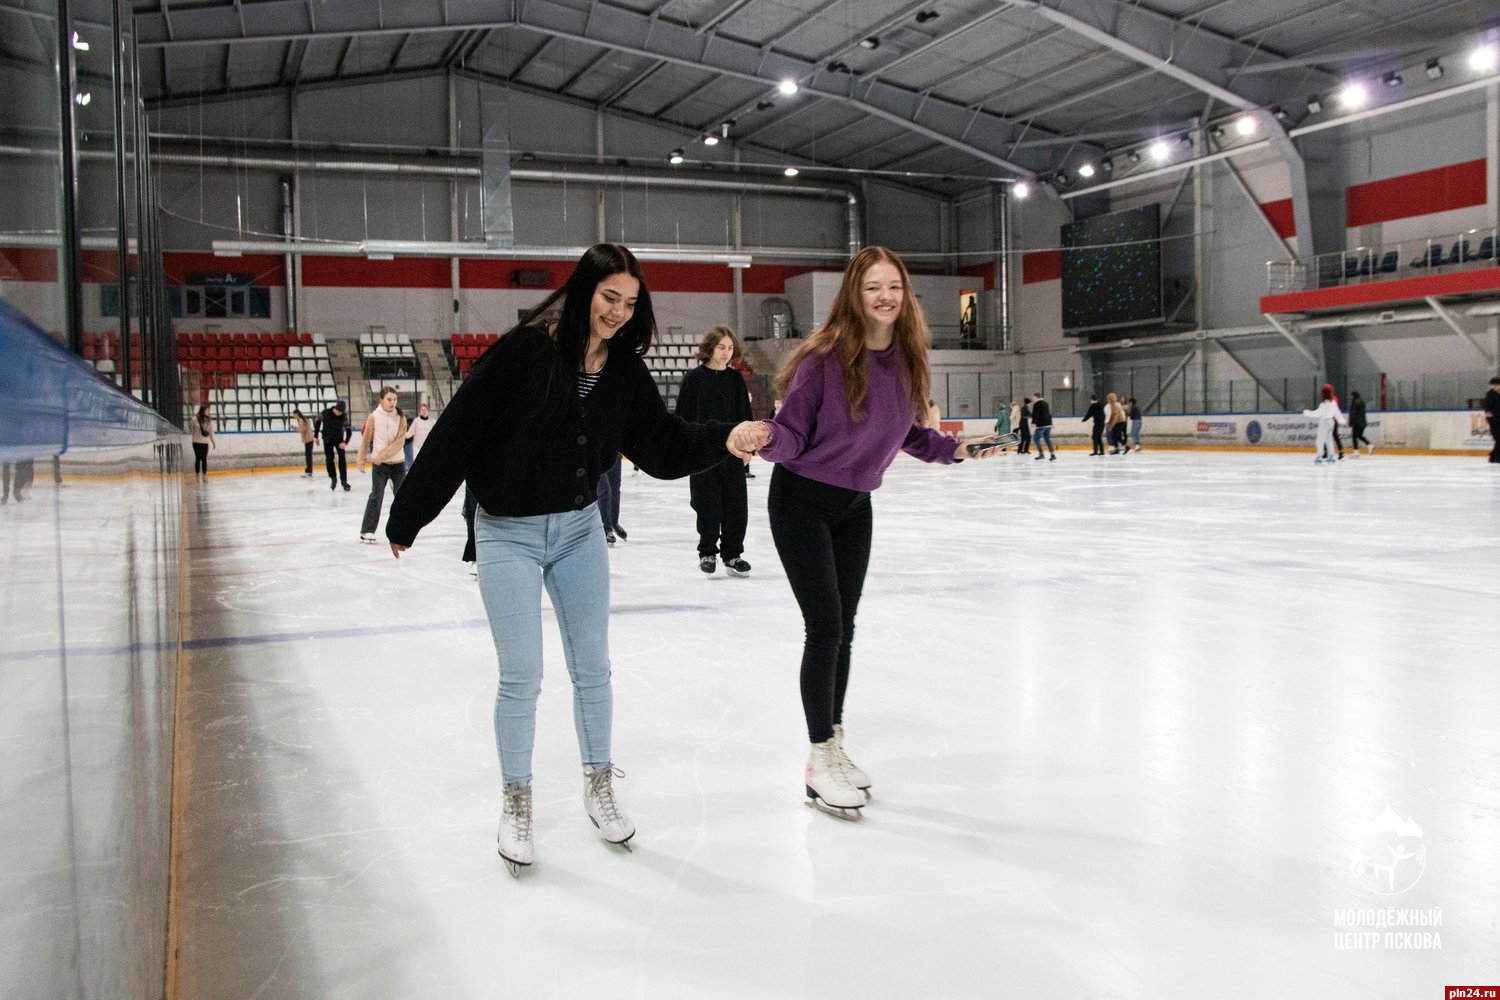 Покататься на коньках бесплатно может псковская молодёжь в Ледовом дворце